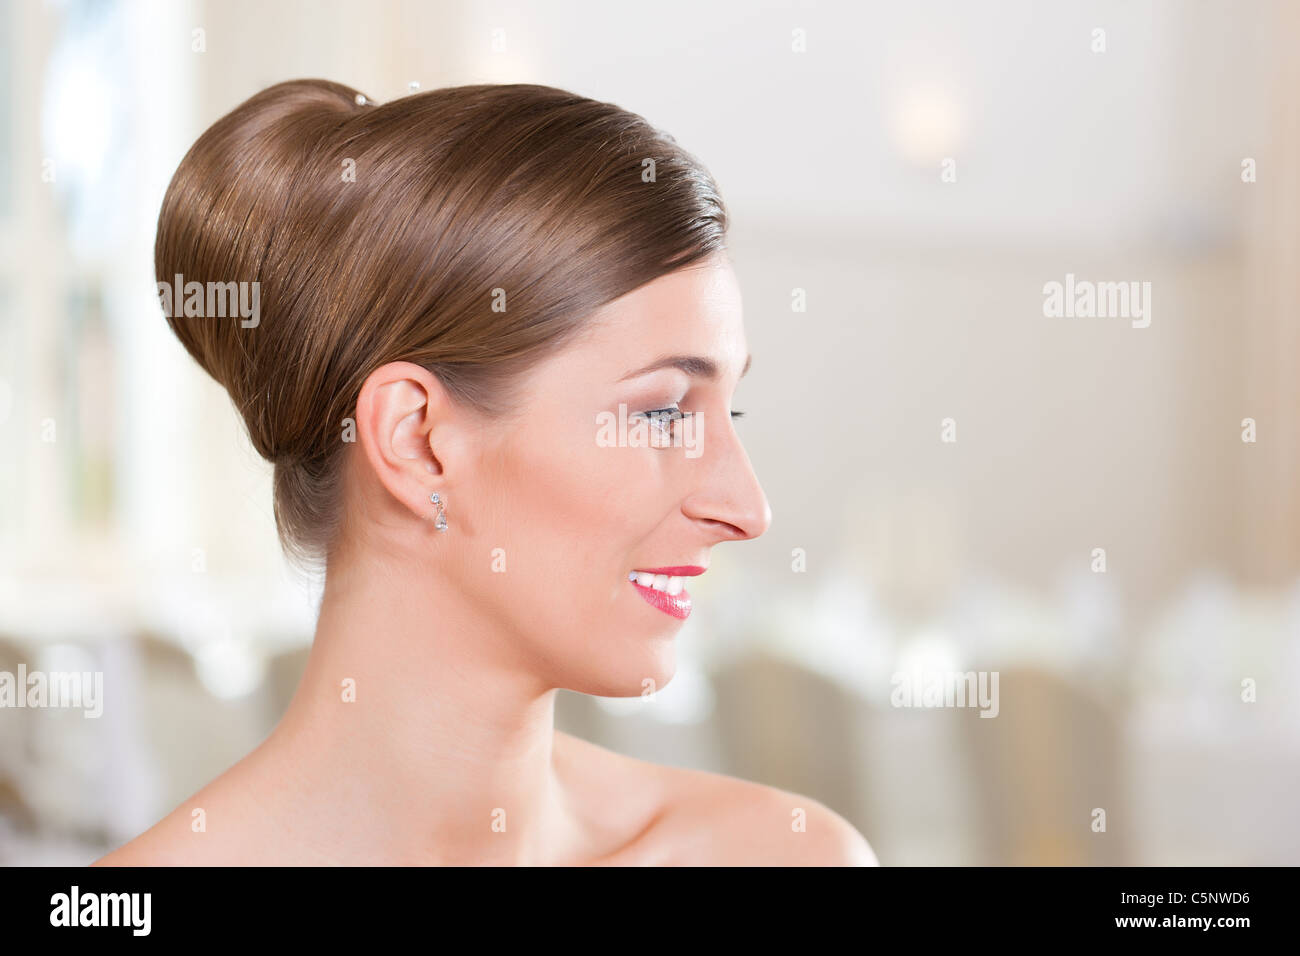 Lächelnde Braut mit gekämmtem Haar vor der Hochzeit Stockfoto